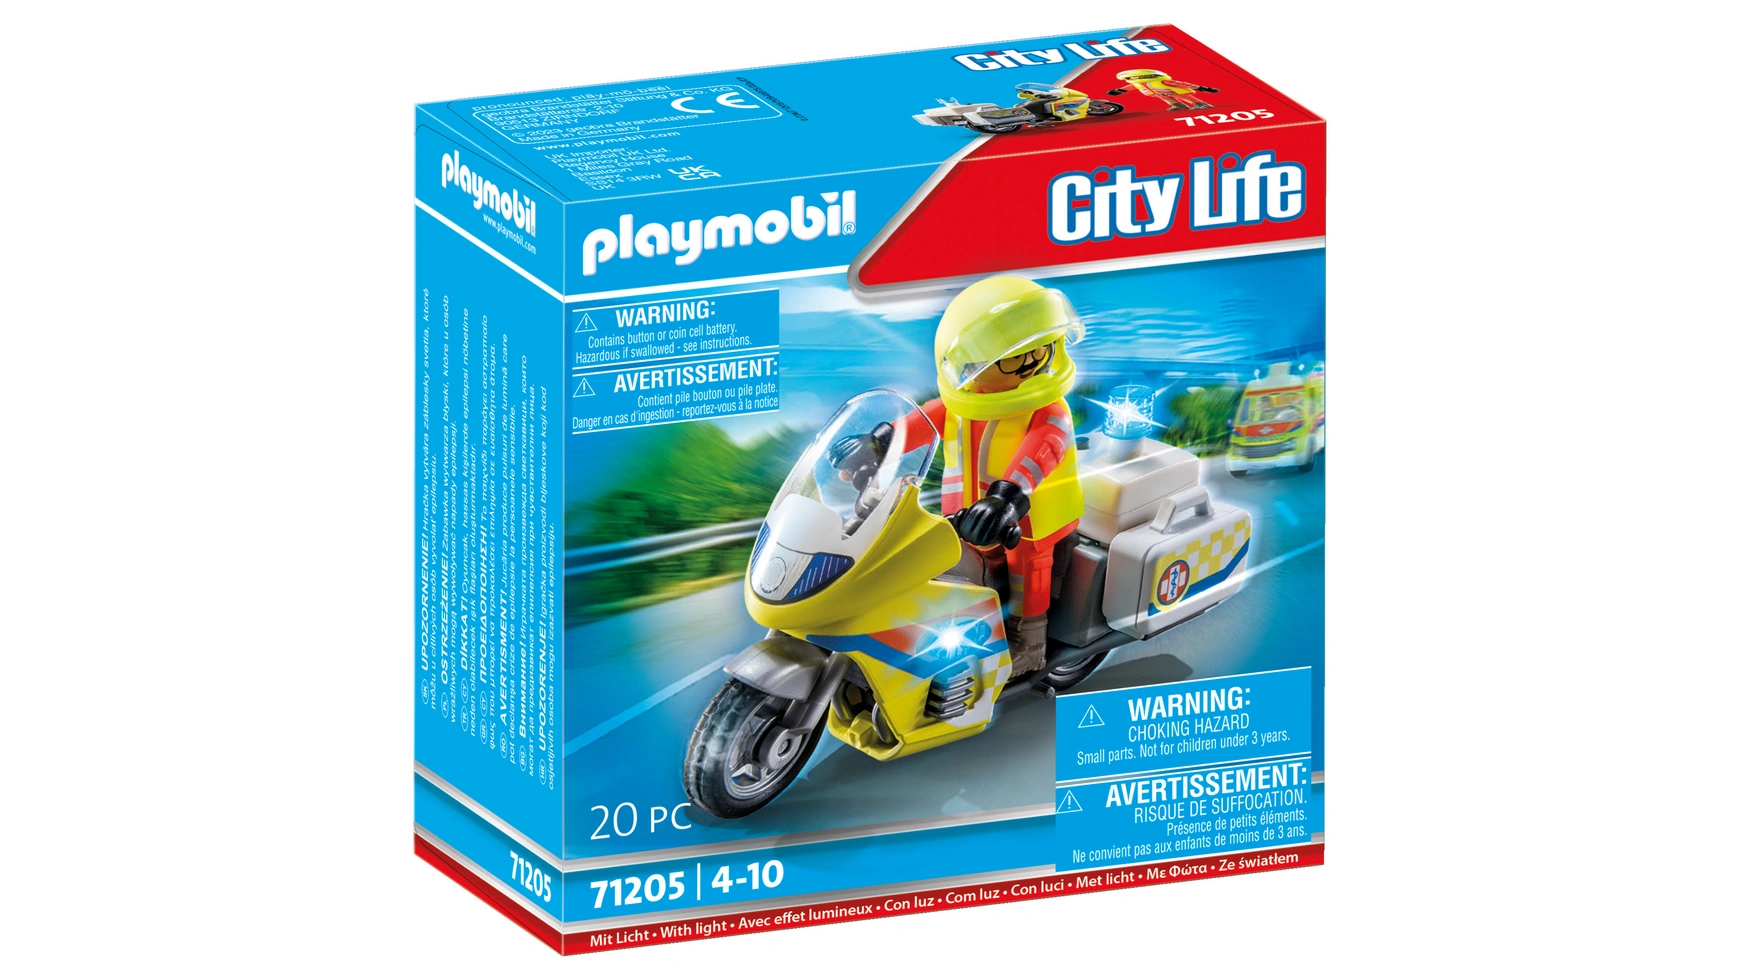 City life мотоцикл врача скорой помощи с мигалкой Playmobil ральф бучков врач скорой помощи